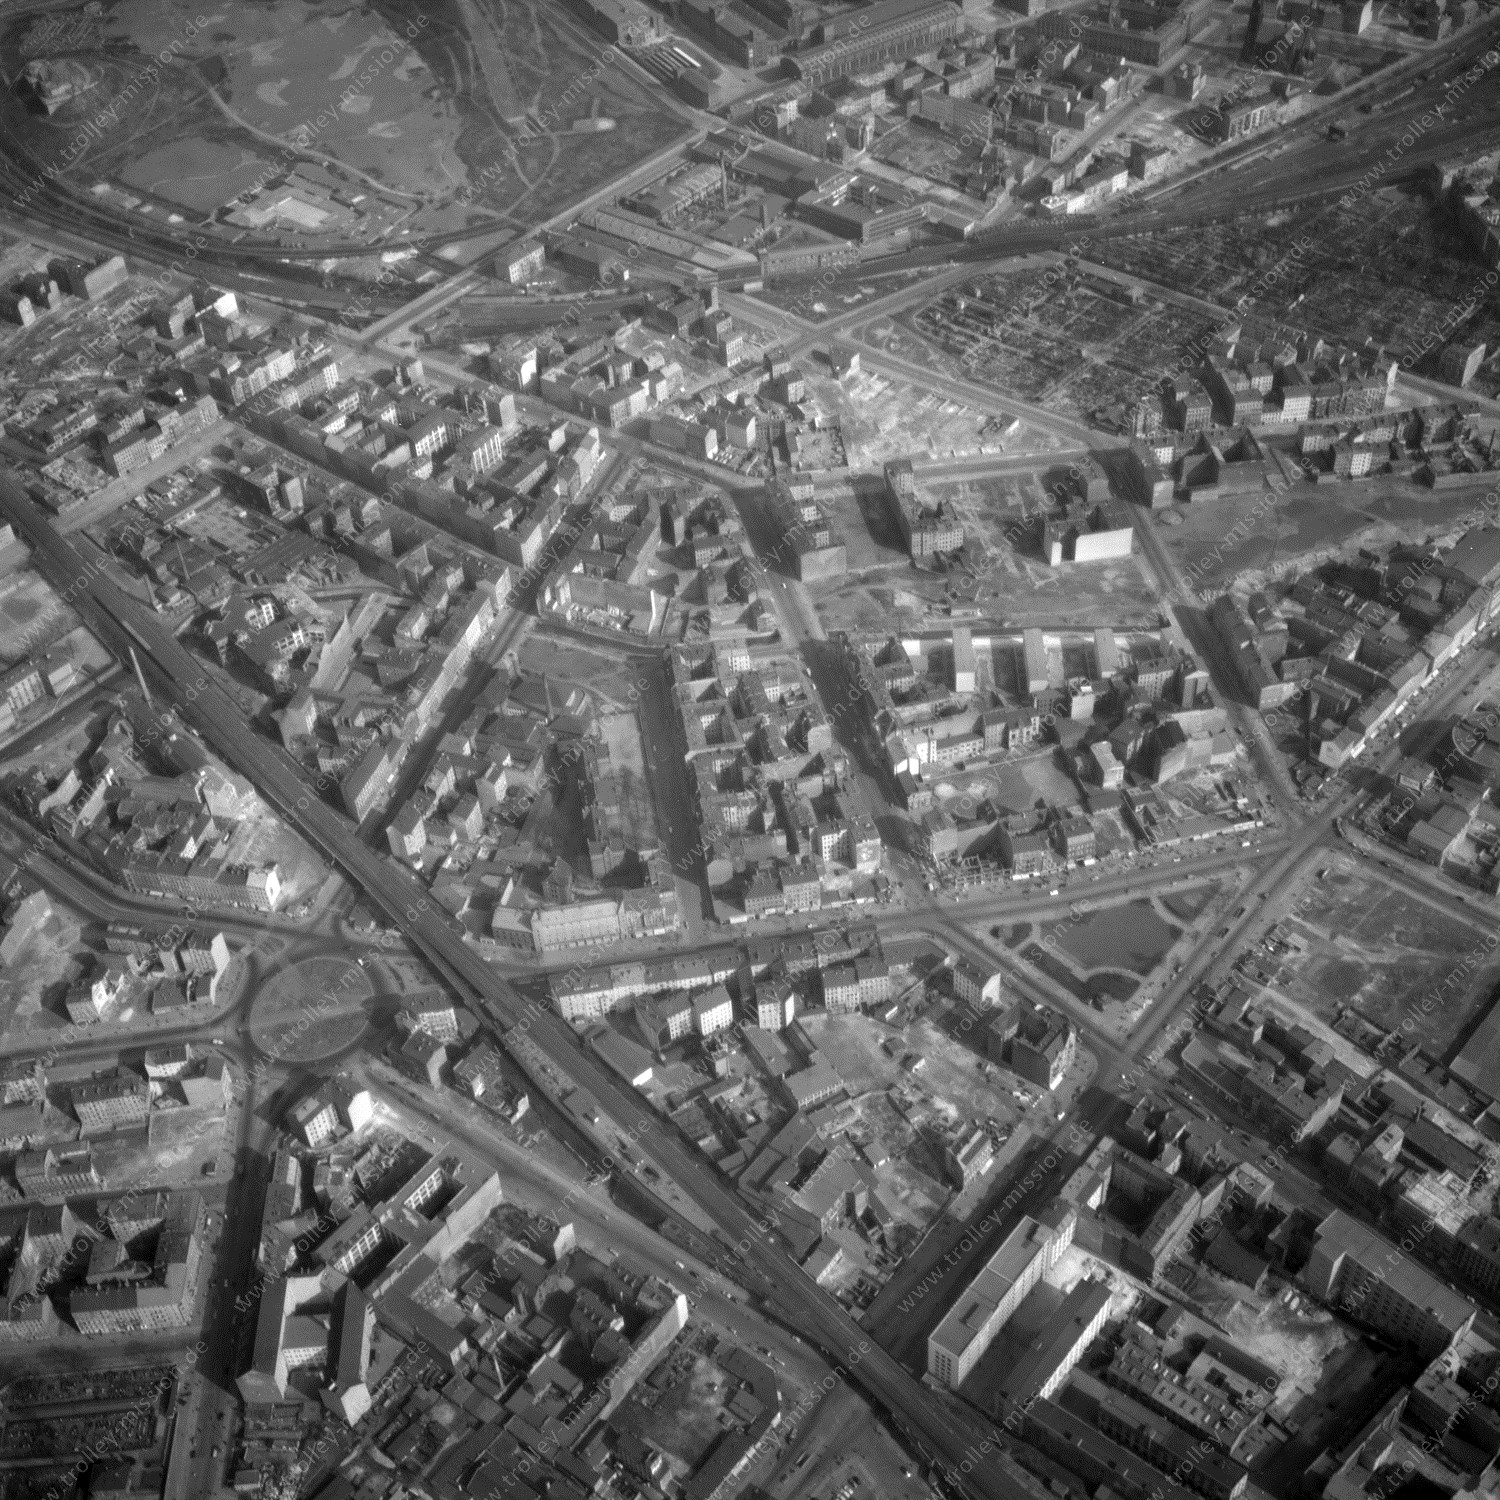 Alte Fotos und Luftbilder von Berlin - Luftbildaufnahme Nr. 04 - Historische Luftaufnahmen von West-Berlin aus dem Jahr 1954 - Flugstrecke Quebec